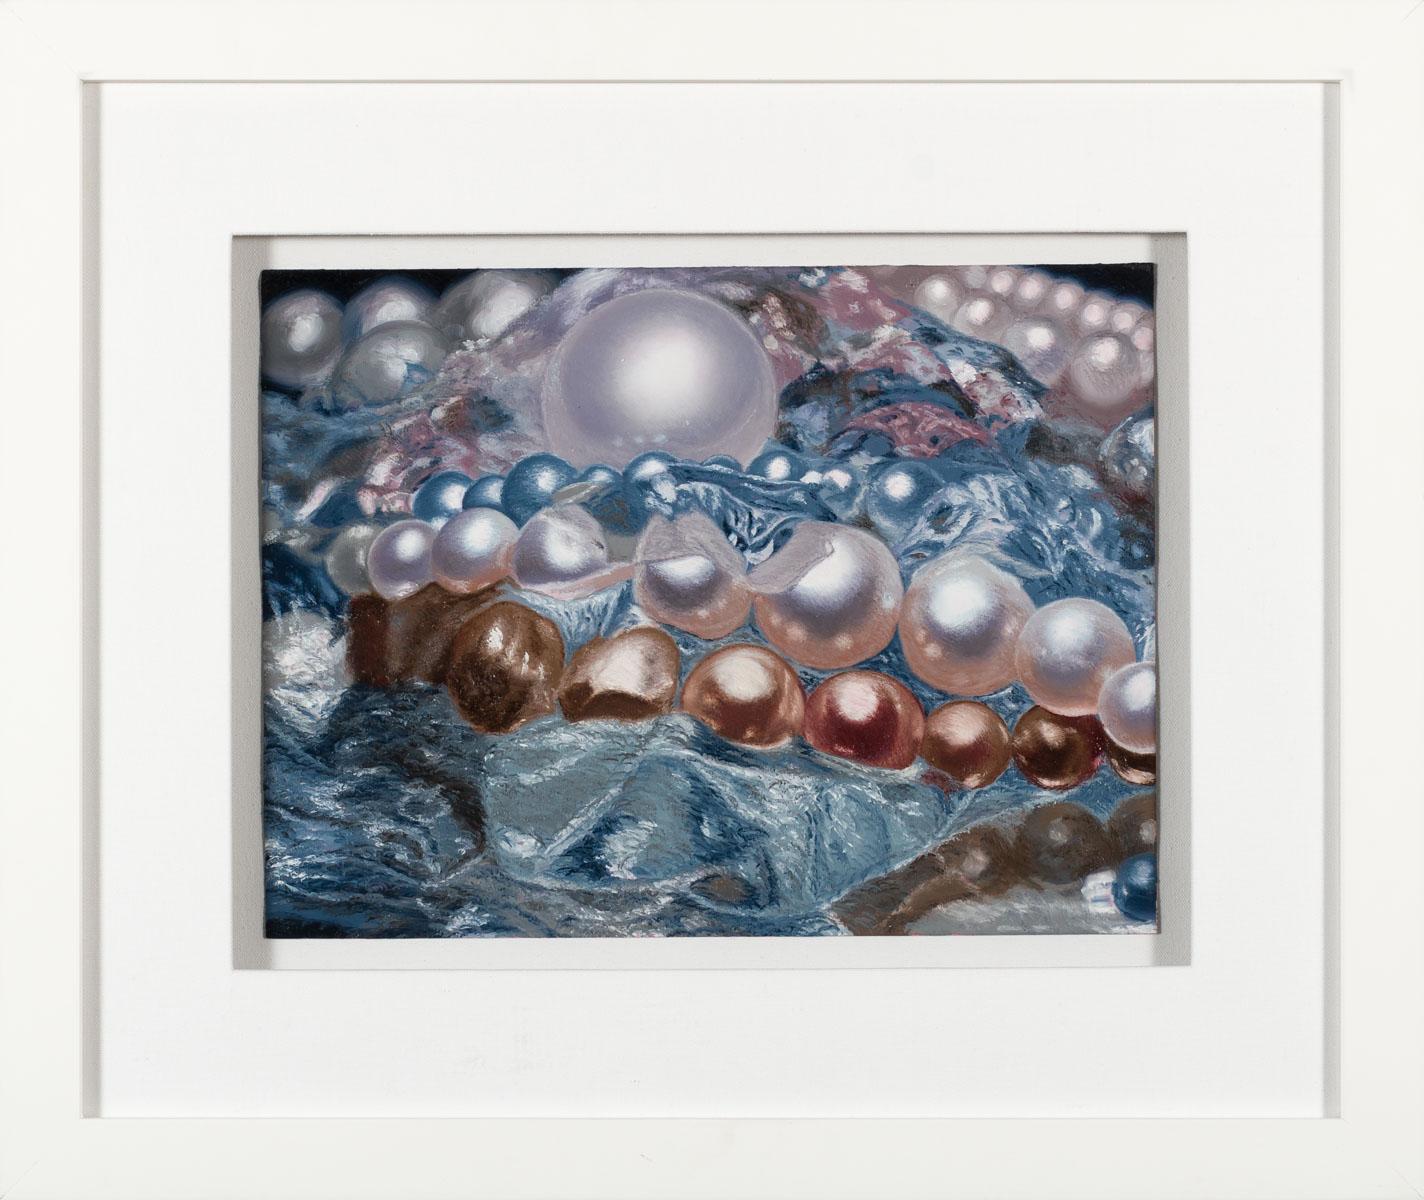 Mirror Pearls - Photorealist Painting by Ben Weiner